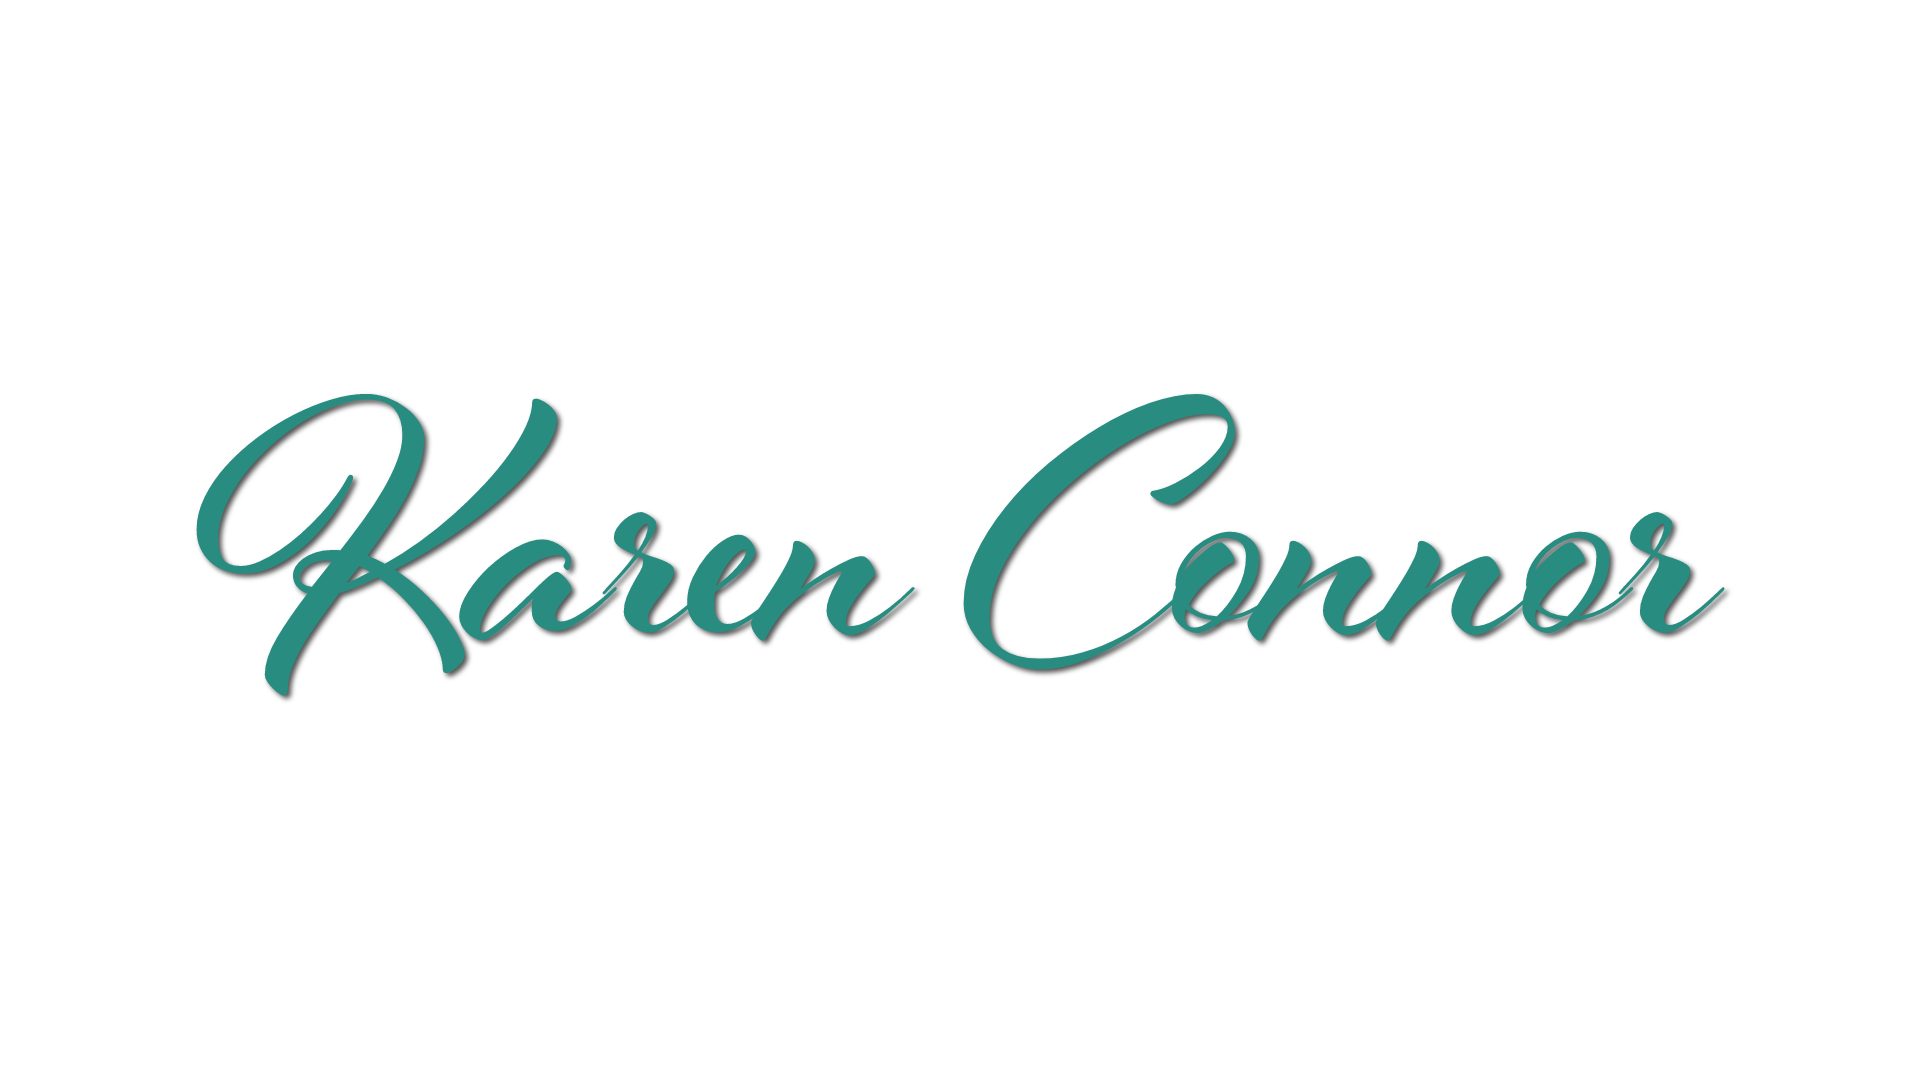 Defender of Youth - Karen Connor